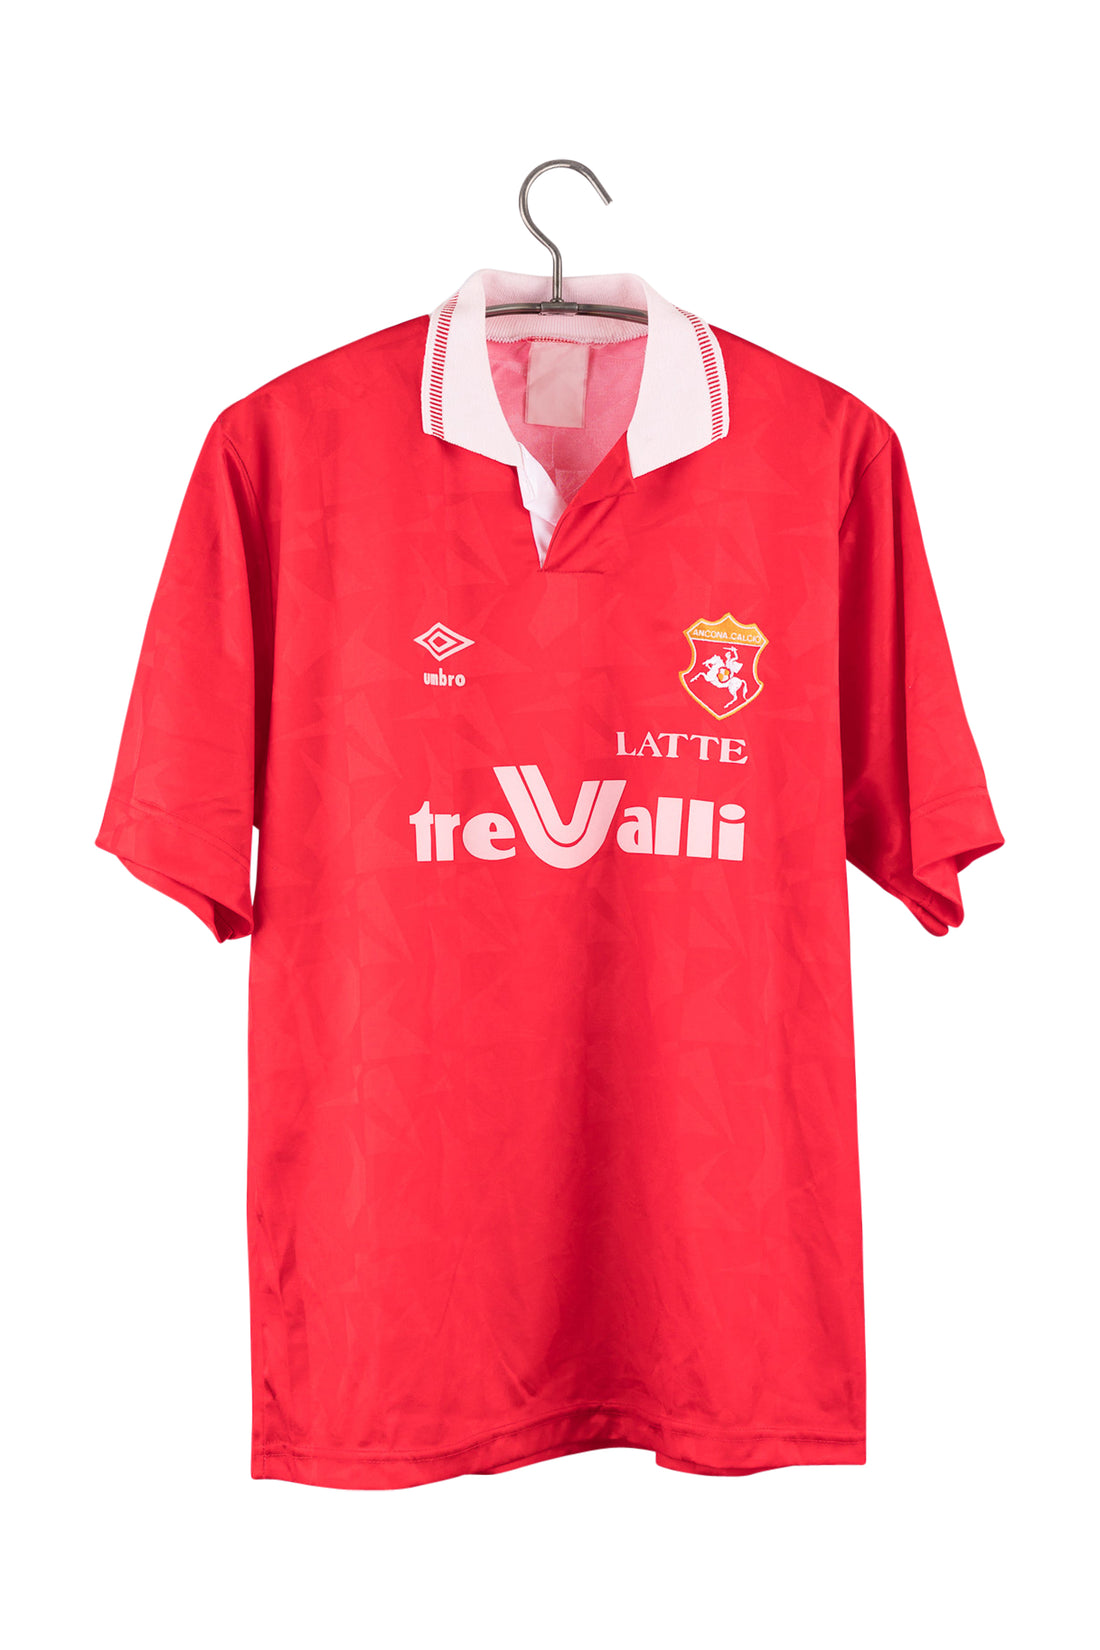 Ancona Calcio 1992 - 1993 Home Football Shirt